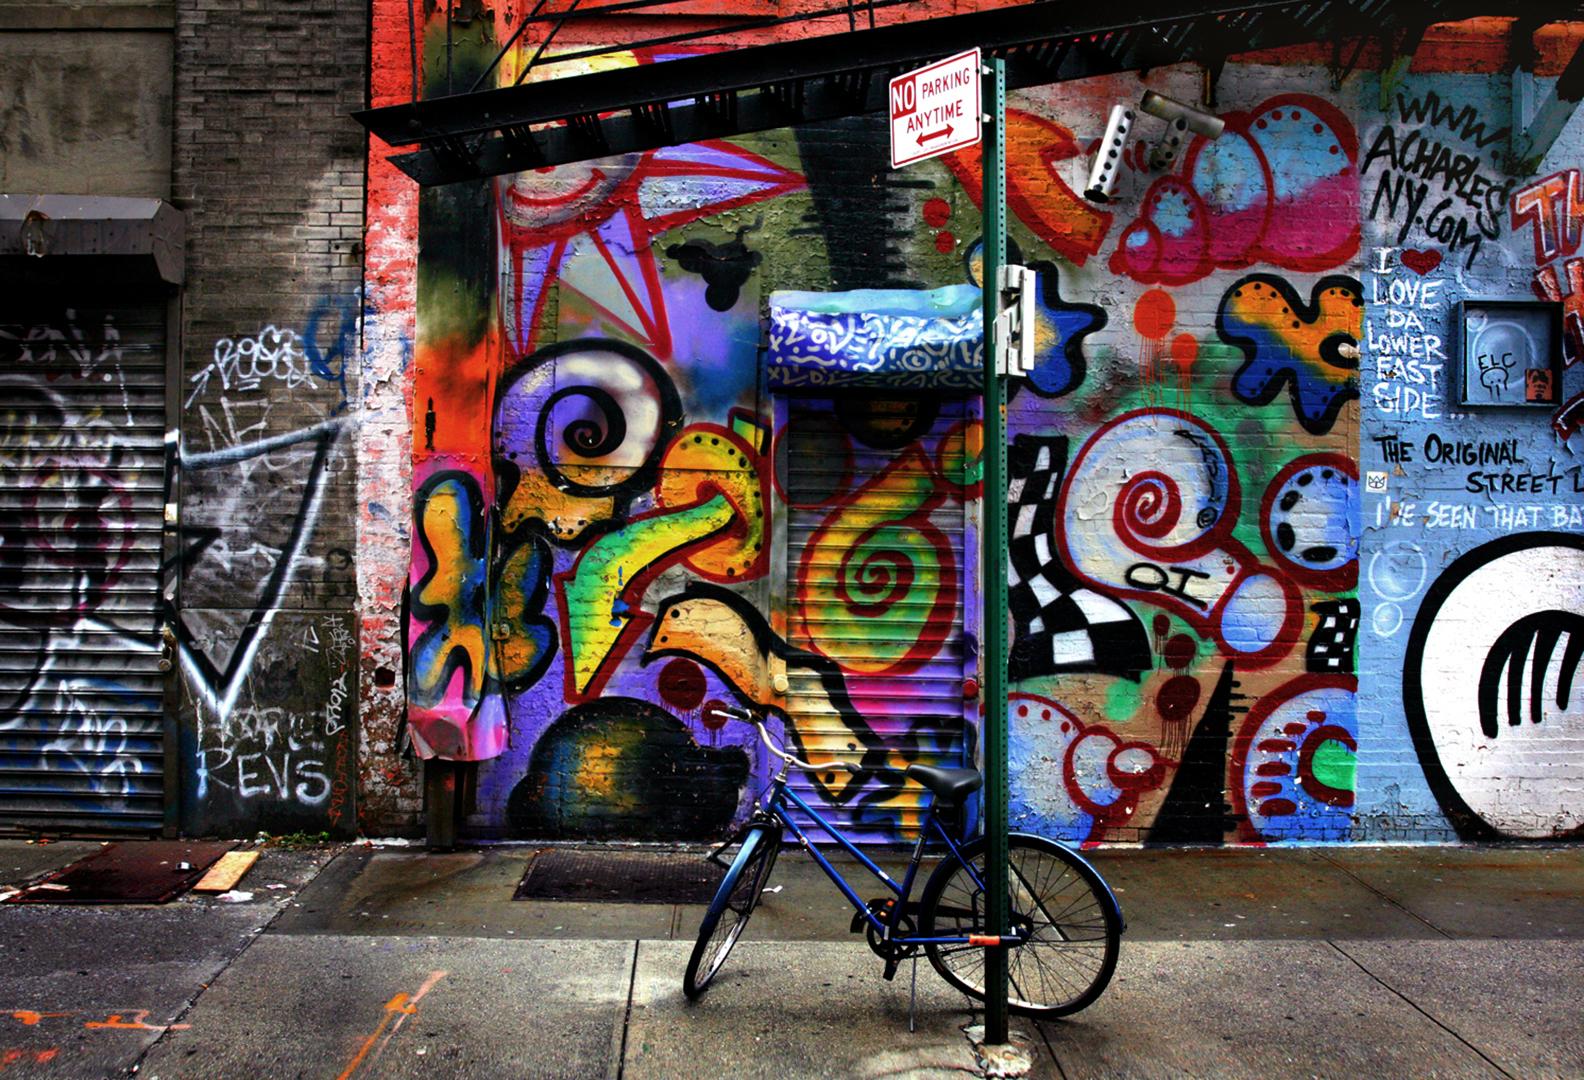 Artistics : Sally Davies (1956)
Titre : Graffiti à vélo (New York)
Année : 2022
Support : Impression à jet d'encre sur papier d'archivage
Edition : 12, plus les épreuves
Taille : 24 x 36 pouces
Condit : Excellent
Inscription : Signé, daté, titré par